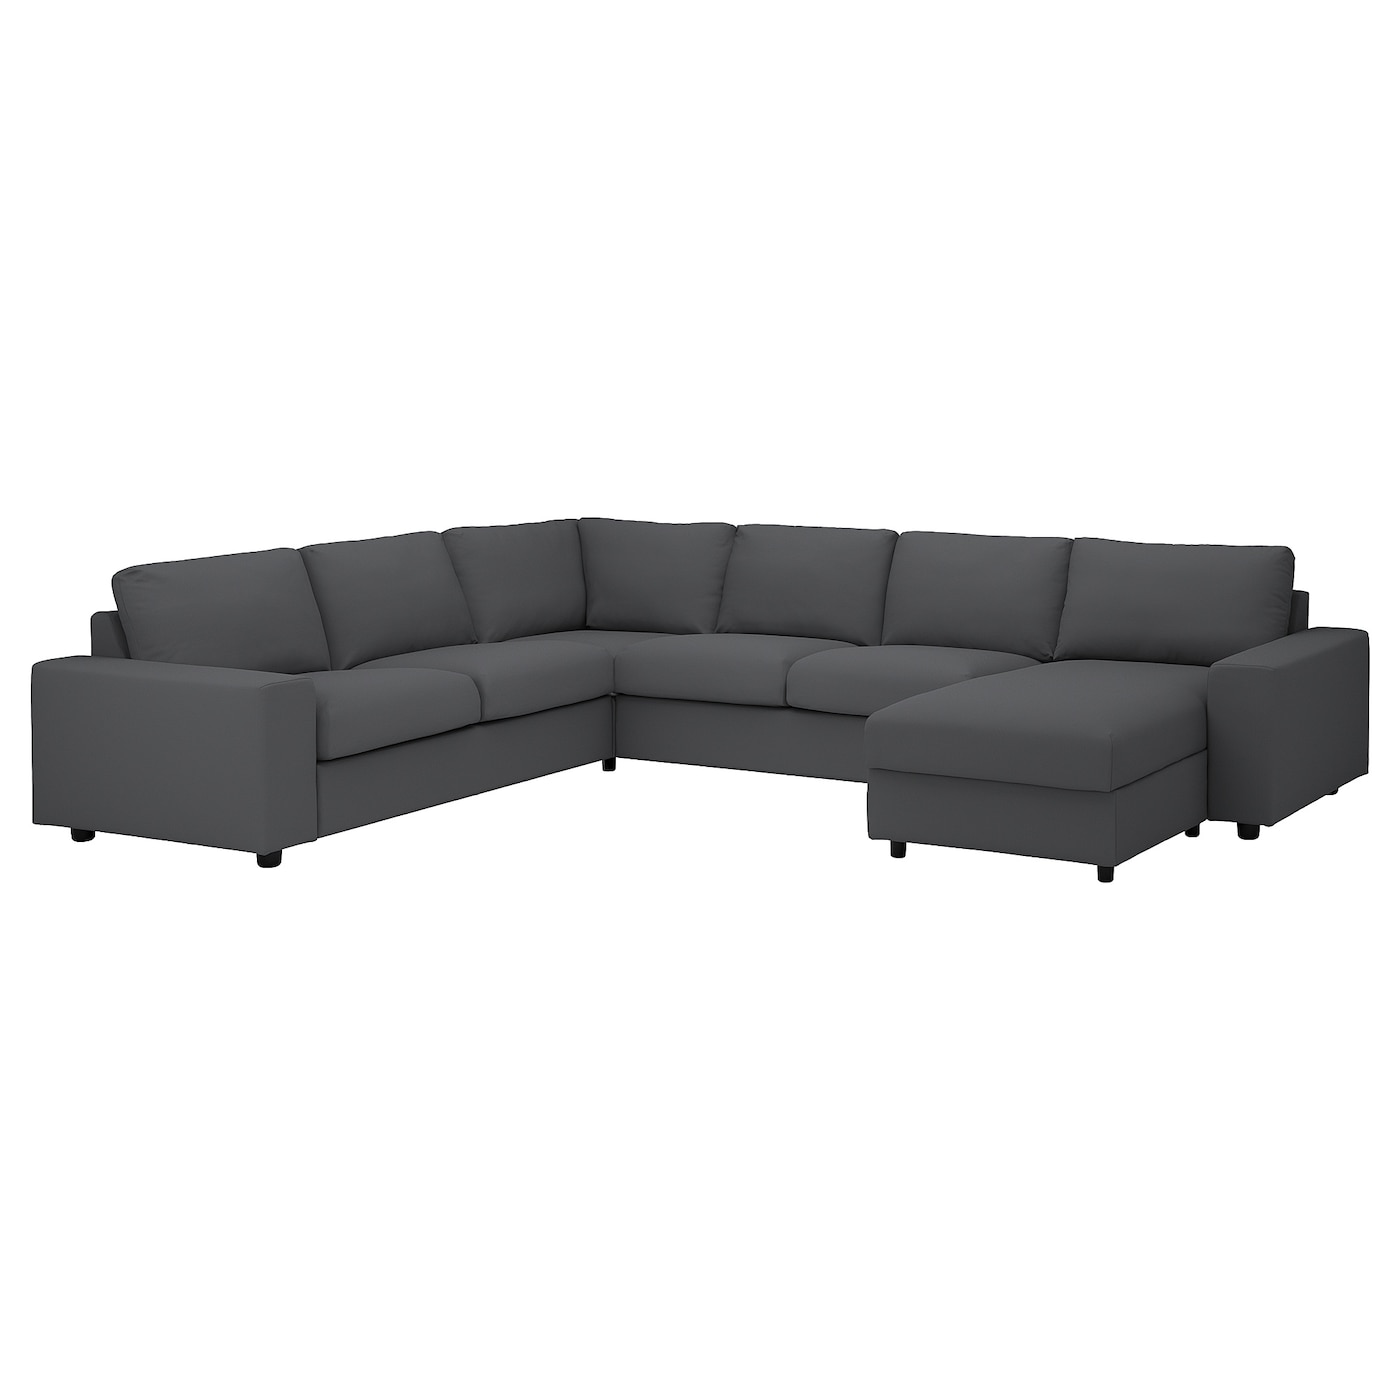 ВИМЛЕ Диван угловой, 5-местный. диван+диван, с широкими подлокотниками/Халларп серый VIMLE IKEA диван угловой баден next с подлокотниками